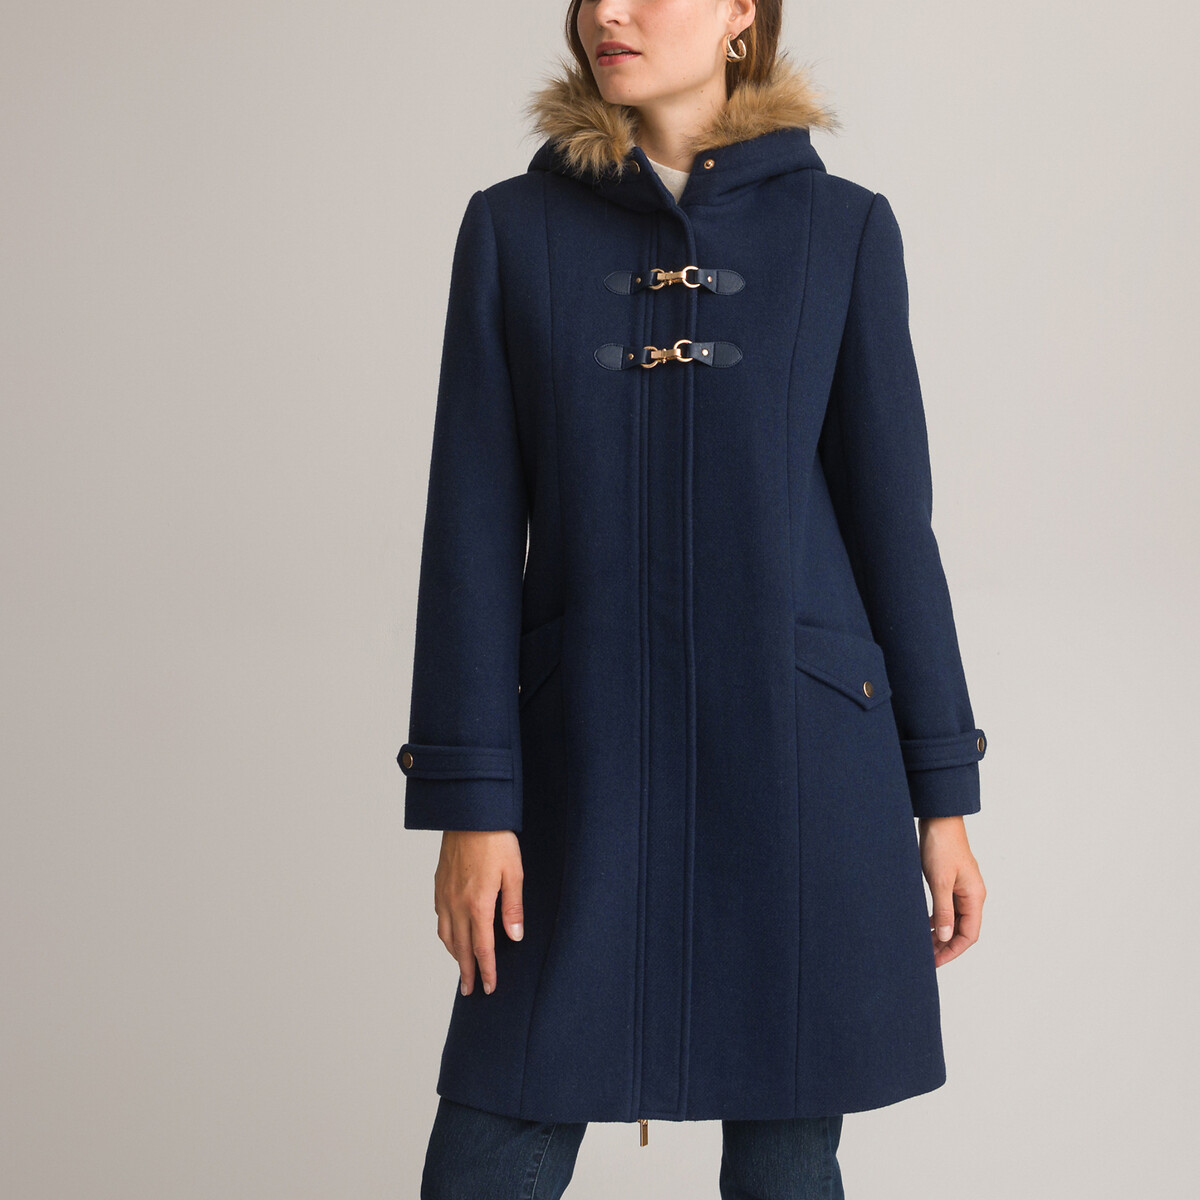 Пальто средней длины с капюшоном и застежкой на молнию 36 (FR) - 42 (RUS) синий пальто средней длины с застежкой на пуговицы 40 fr 46 rus синий